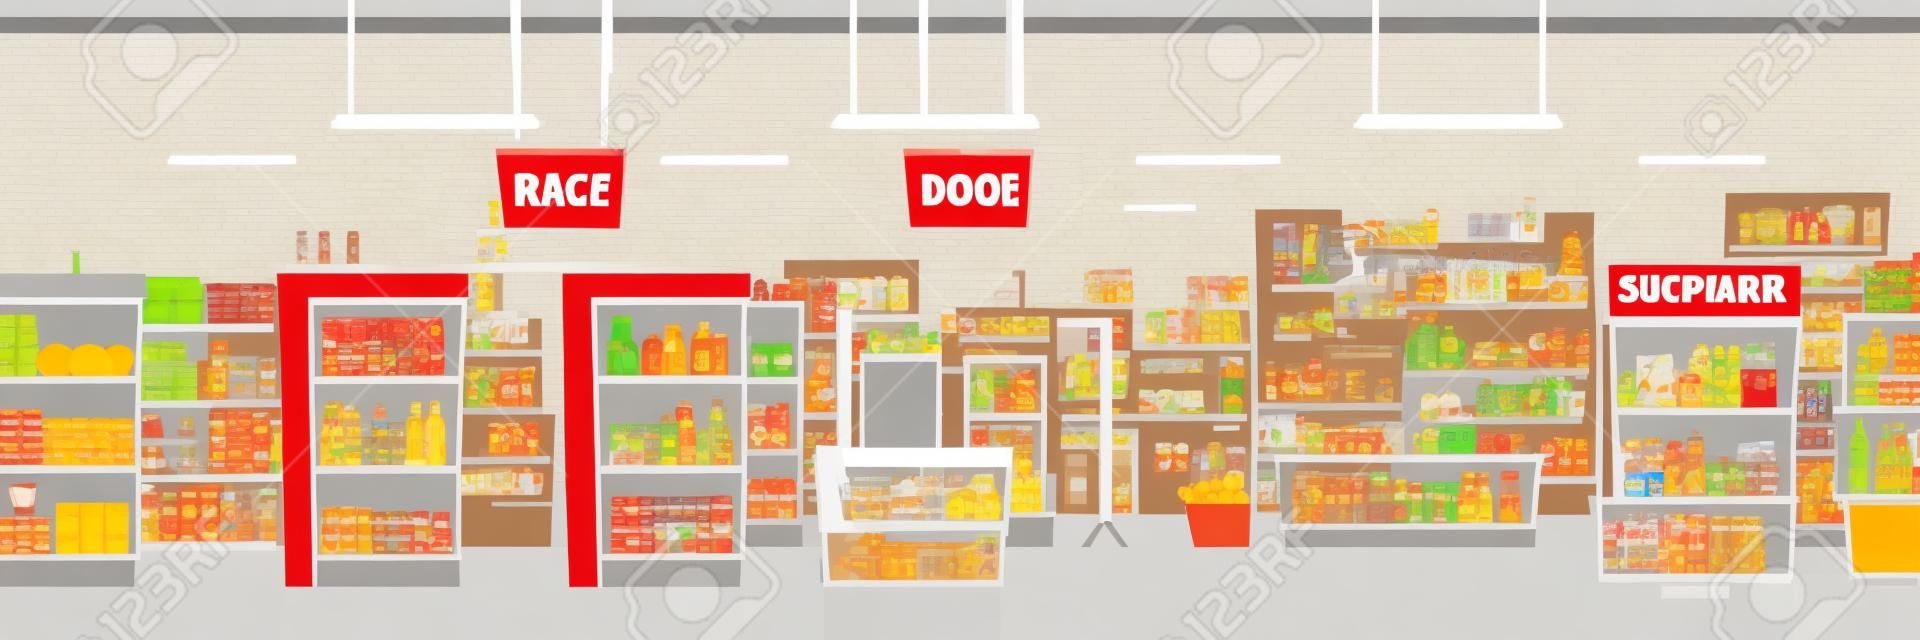 Supermarket lub duży sklep spożywczy handel pokój wnętrze kreskówka tło wektor z regałami pełnymi produktów spożywczych i owoców, lodówek z napojami, akwarium i kasą na ilustracji wyjścia